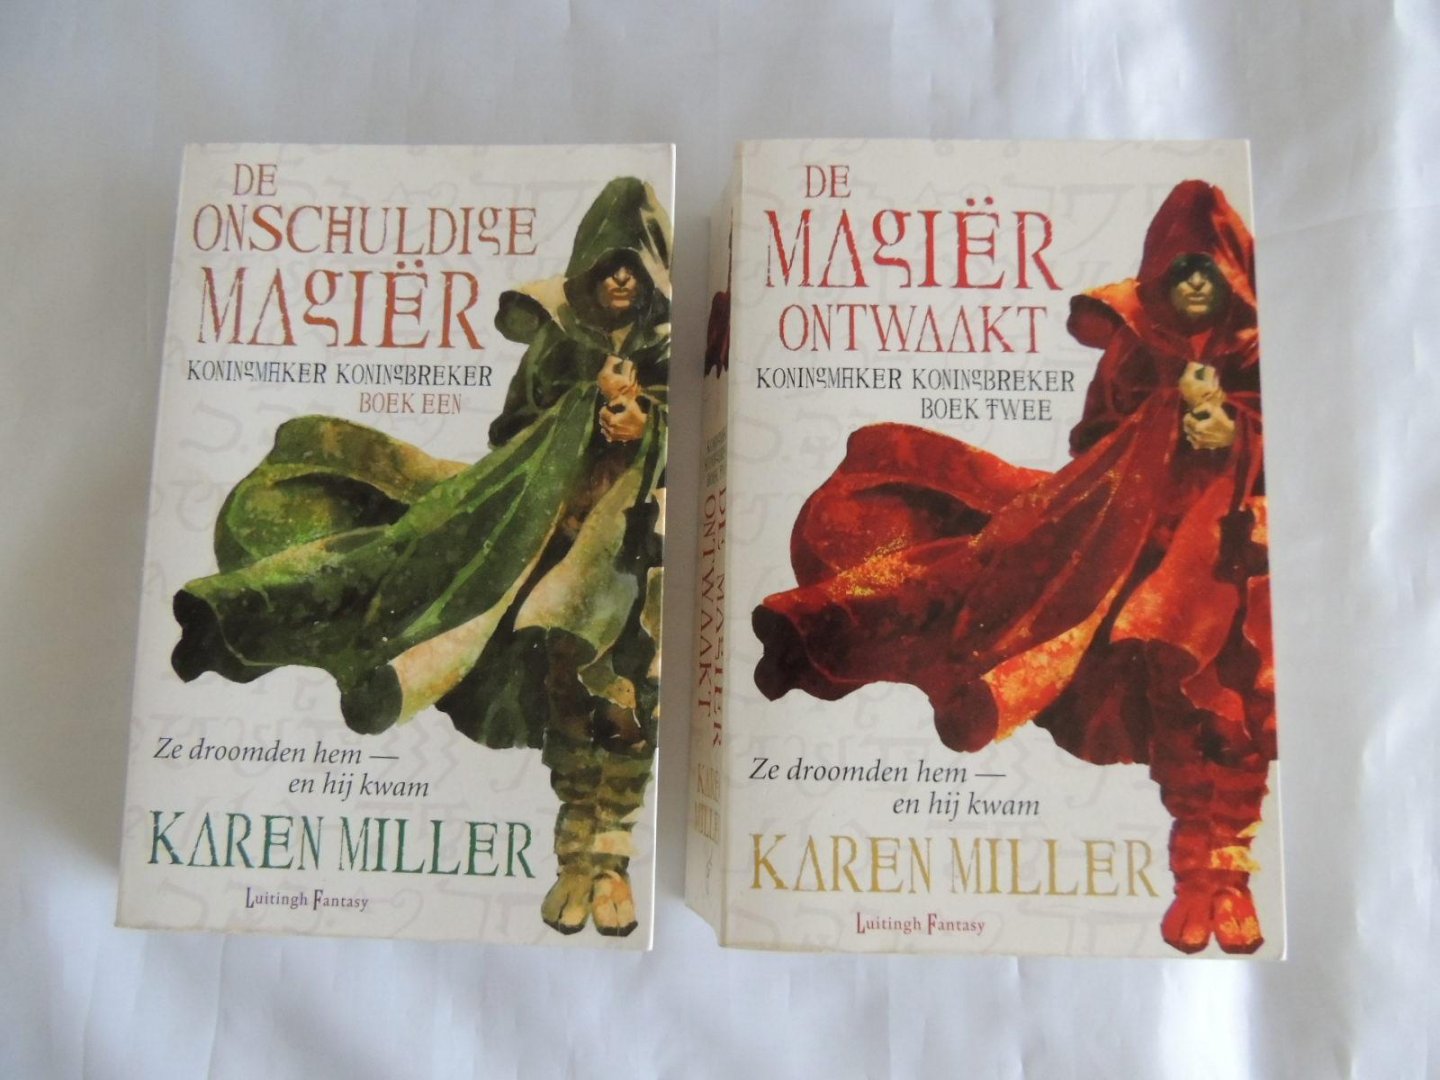 Miller, Karen - Koningmaker Koningbreker tweeluik - 1. De onschuldige Magiër / 2. De Magiër ontwaakt